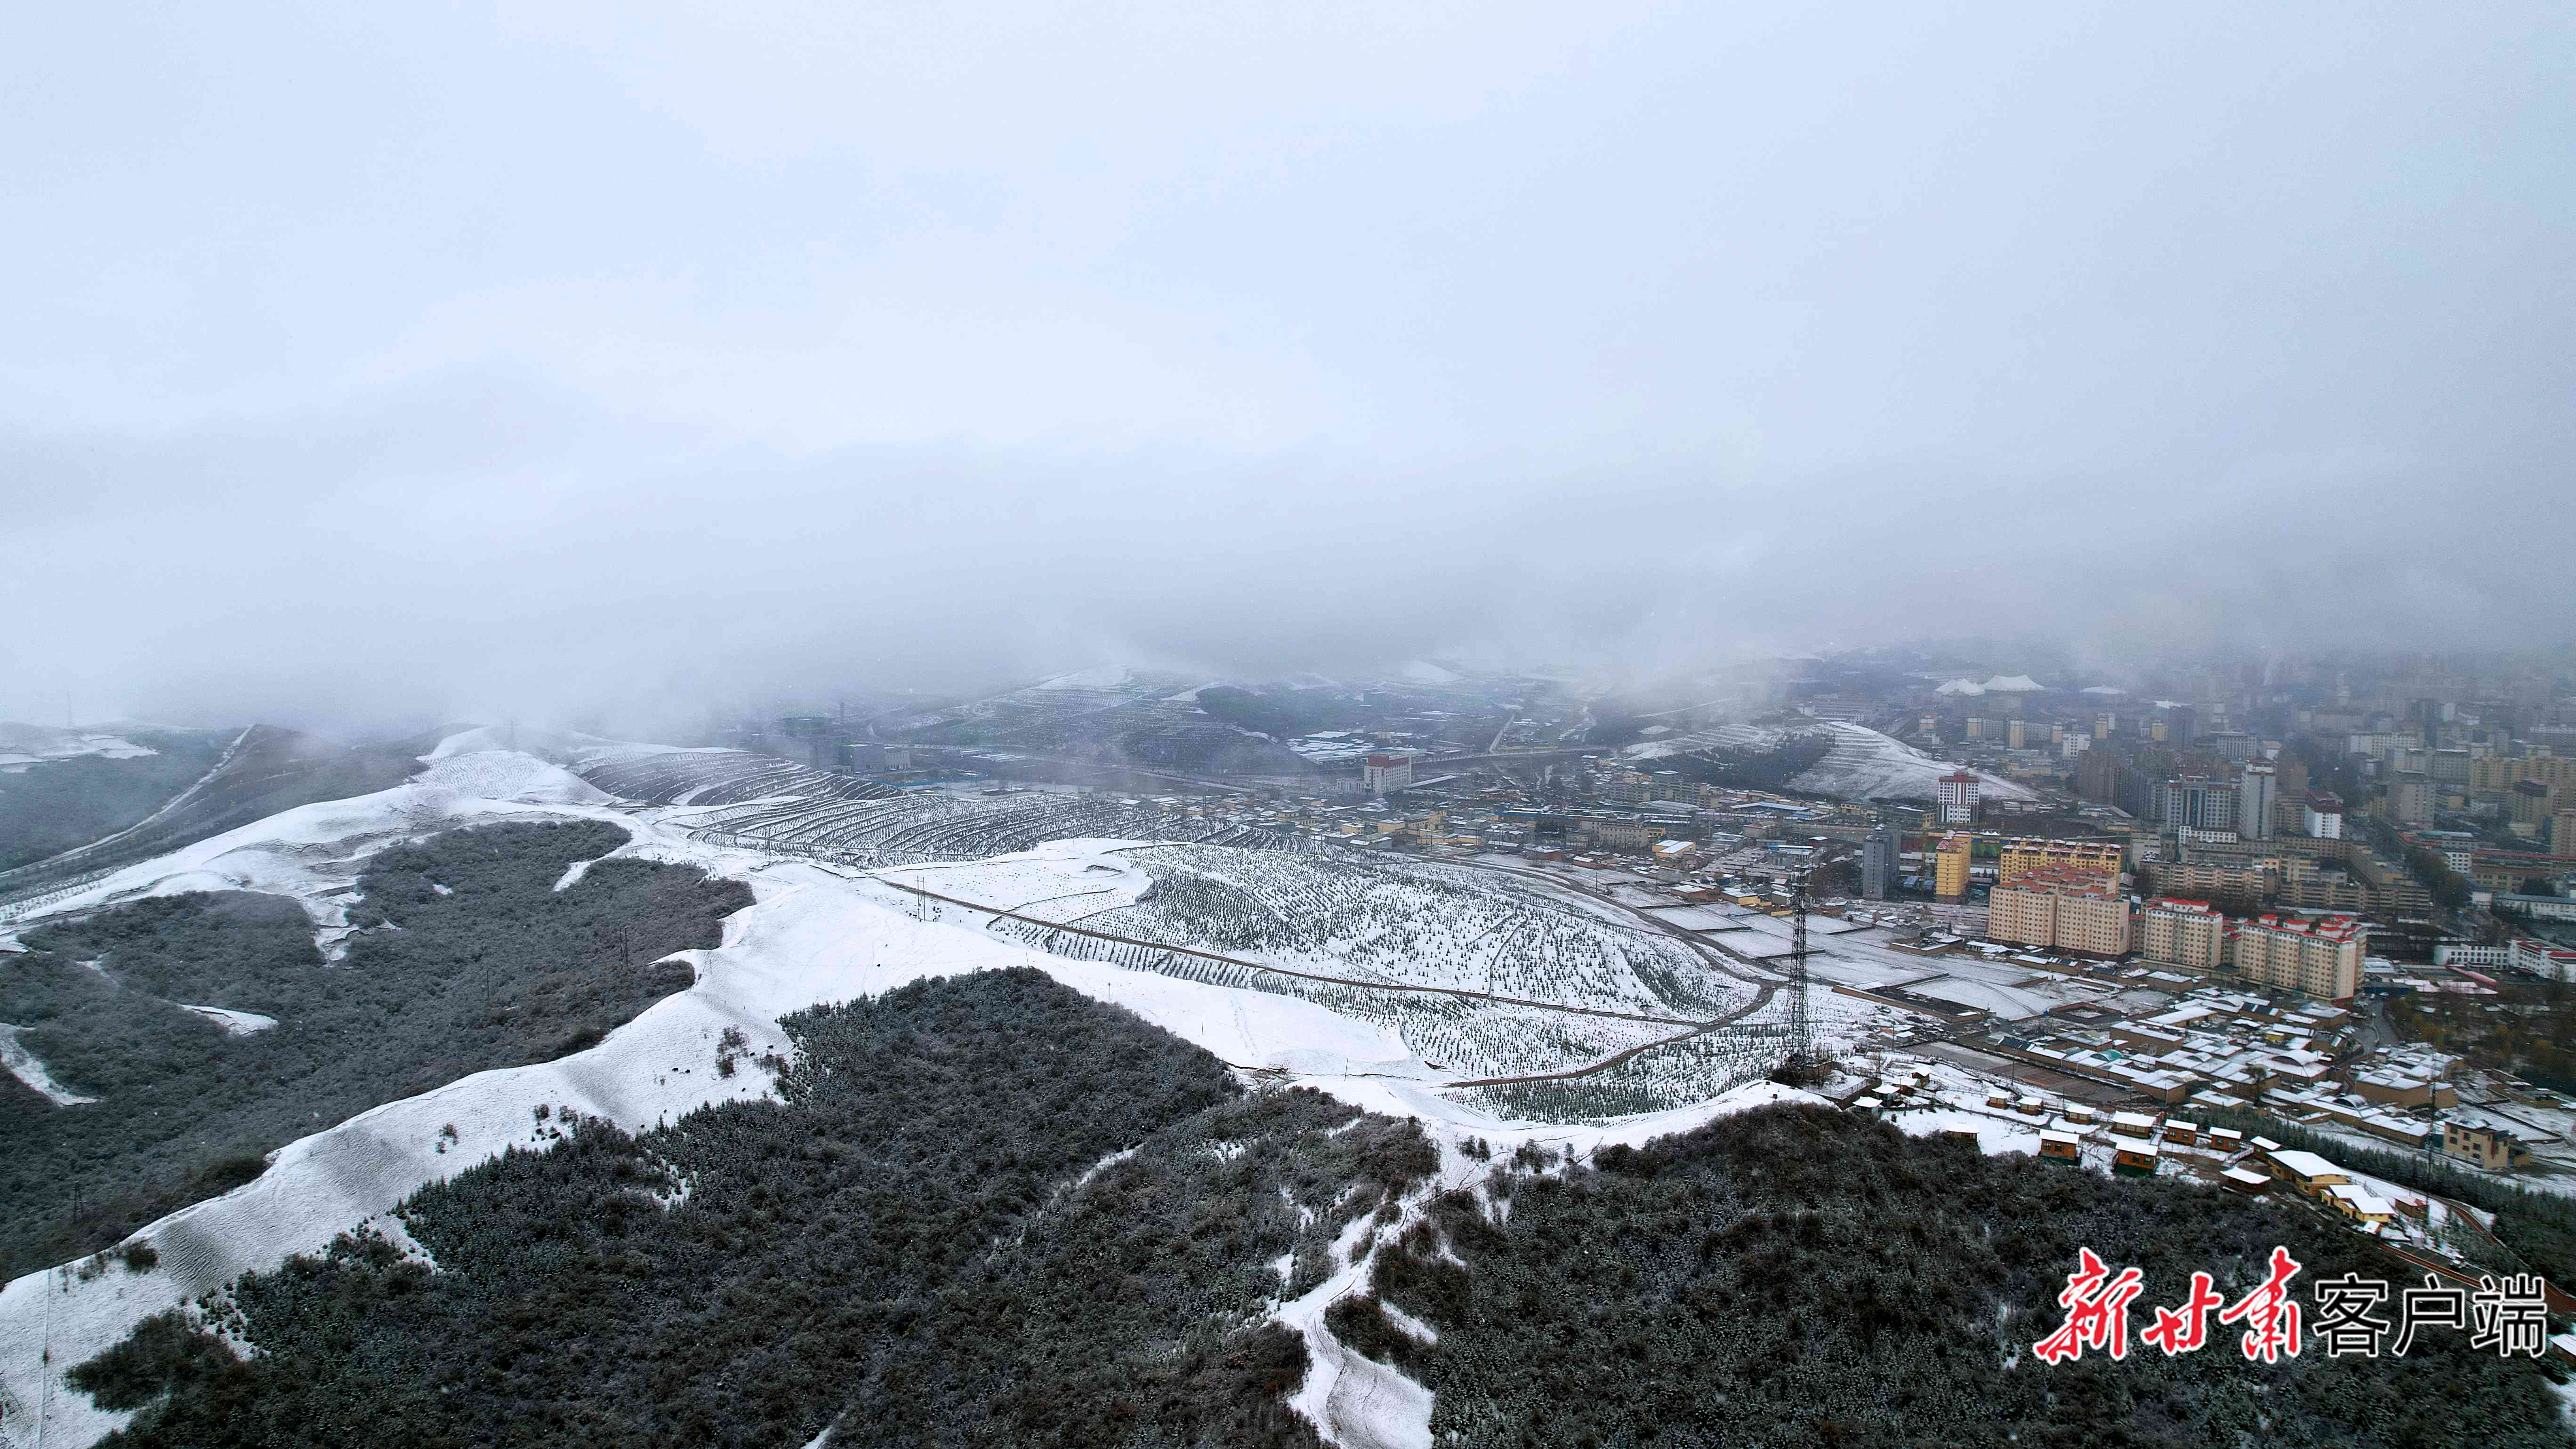 人间下了场甘南雪 气象部门发布预警积极应对 - 中国日报网